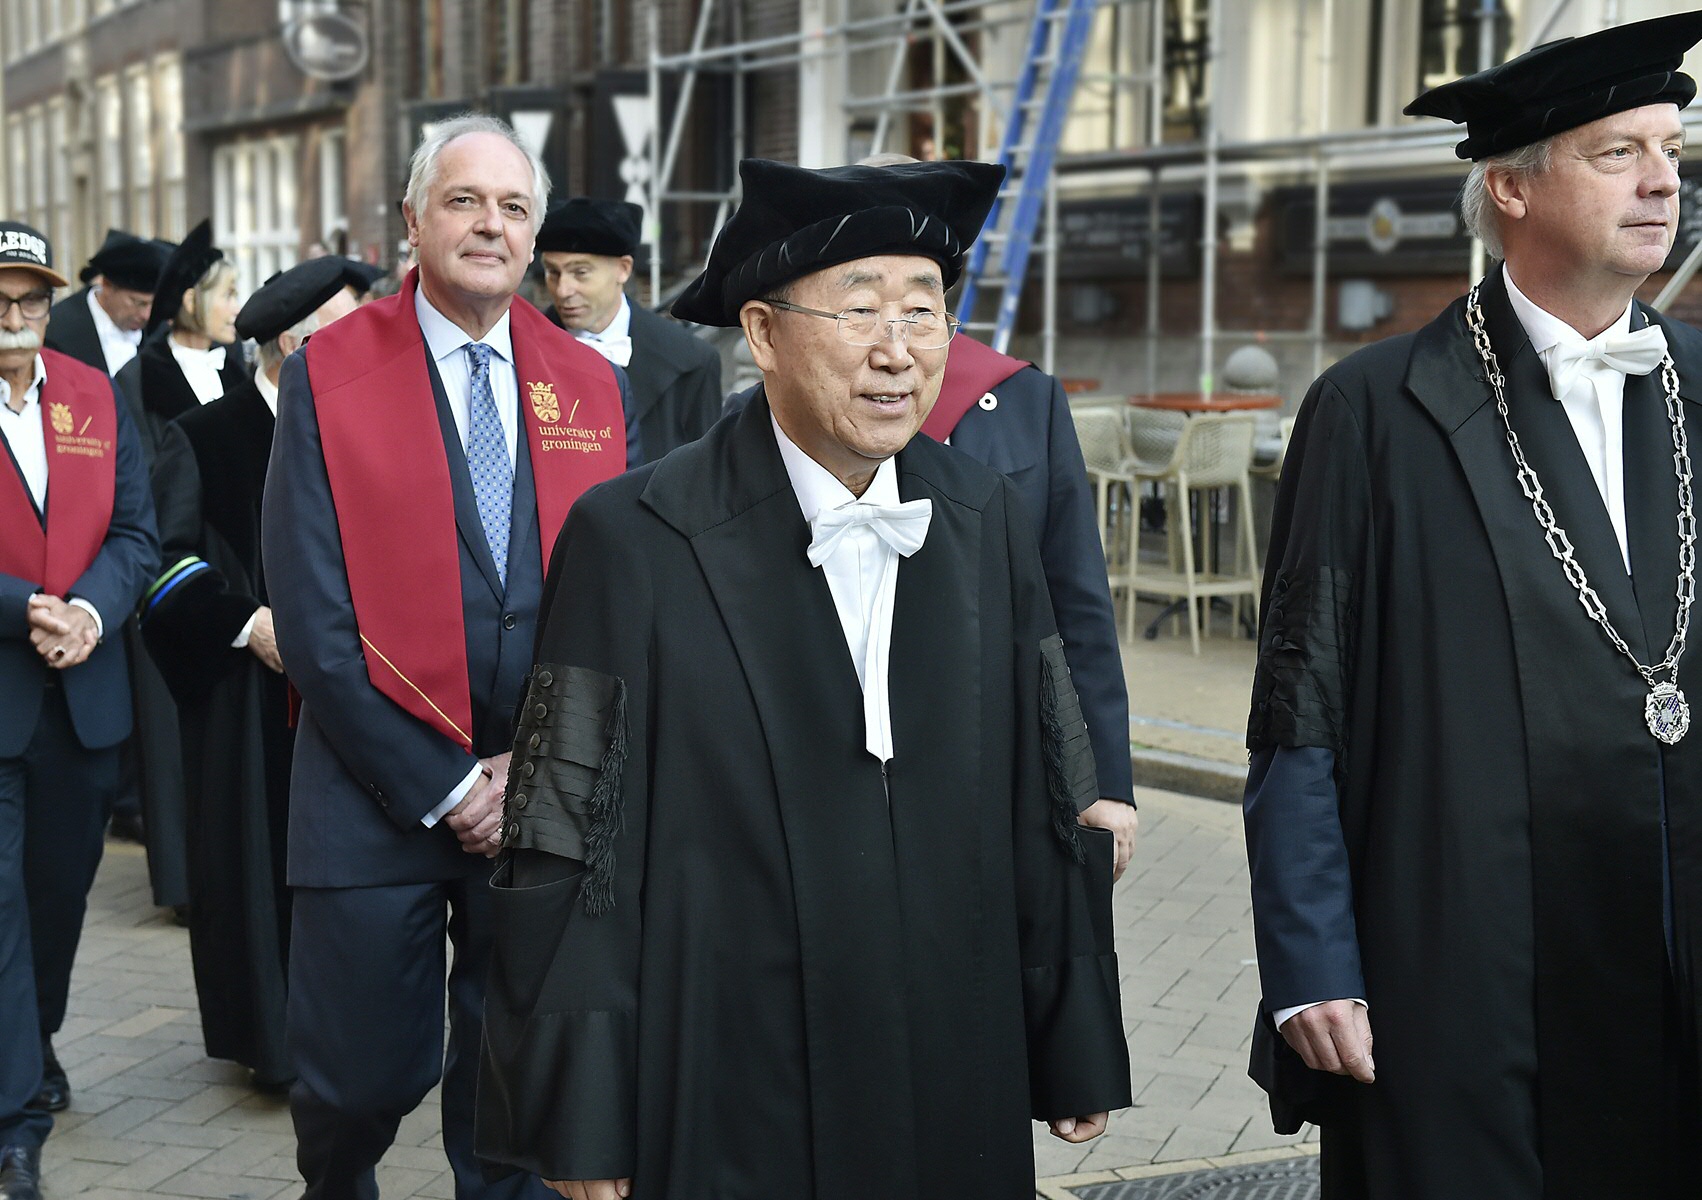 Honory doctorate to Ban Ki-moonHonory doctorate to Ban Ki-moon